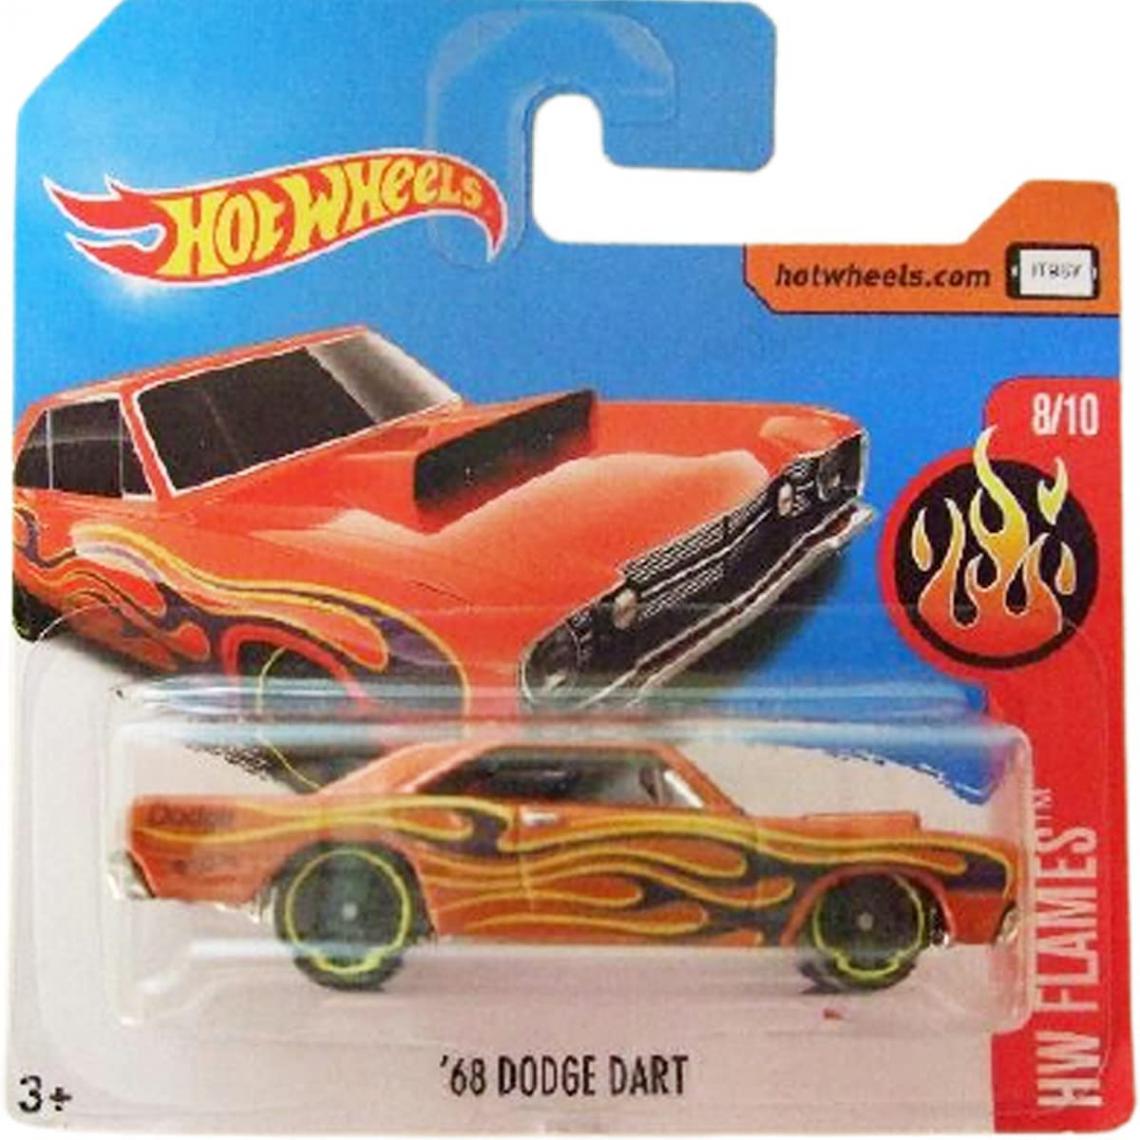 Hot Wheels - véhicule Dodge Dart HW Flames 8/10 - Voiture de collection miniature